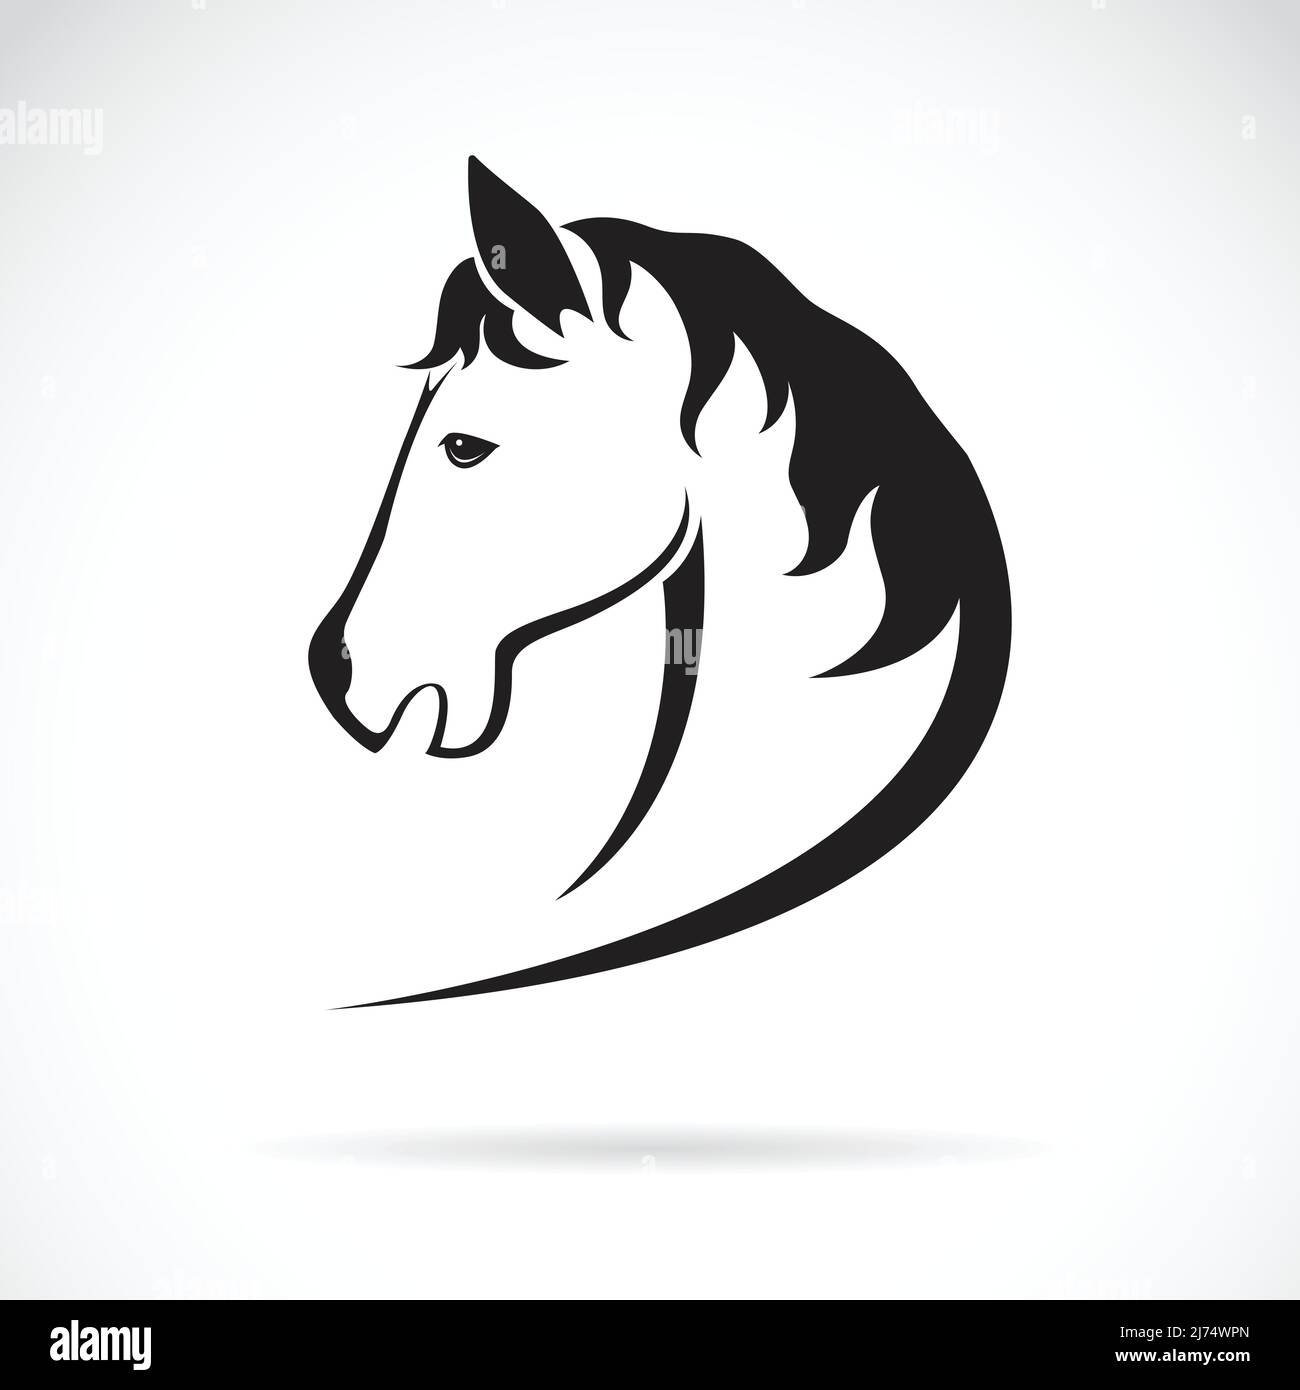 Immagine vettoriale di un disegno a testa di cavallo su sfondo bianco. Illustrazione Vettoriale